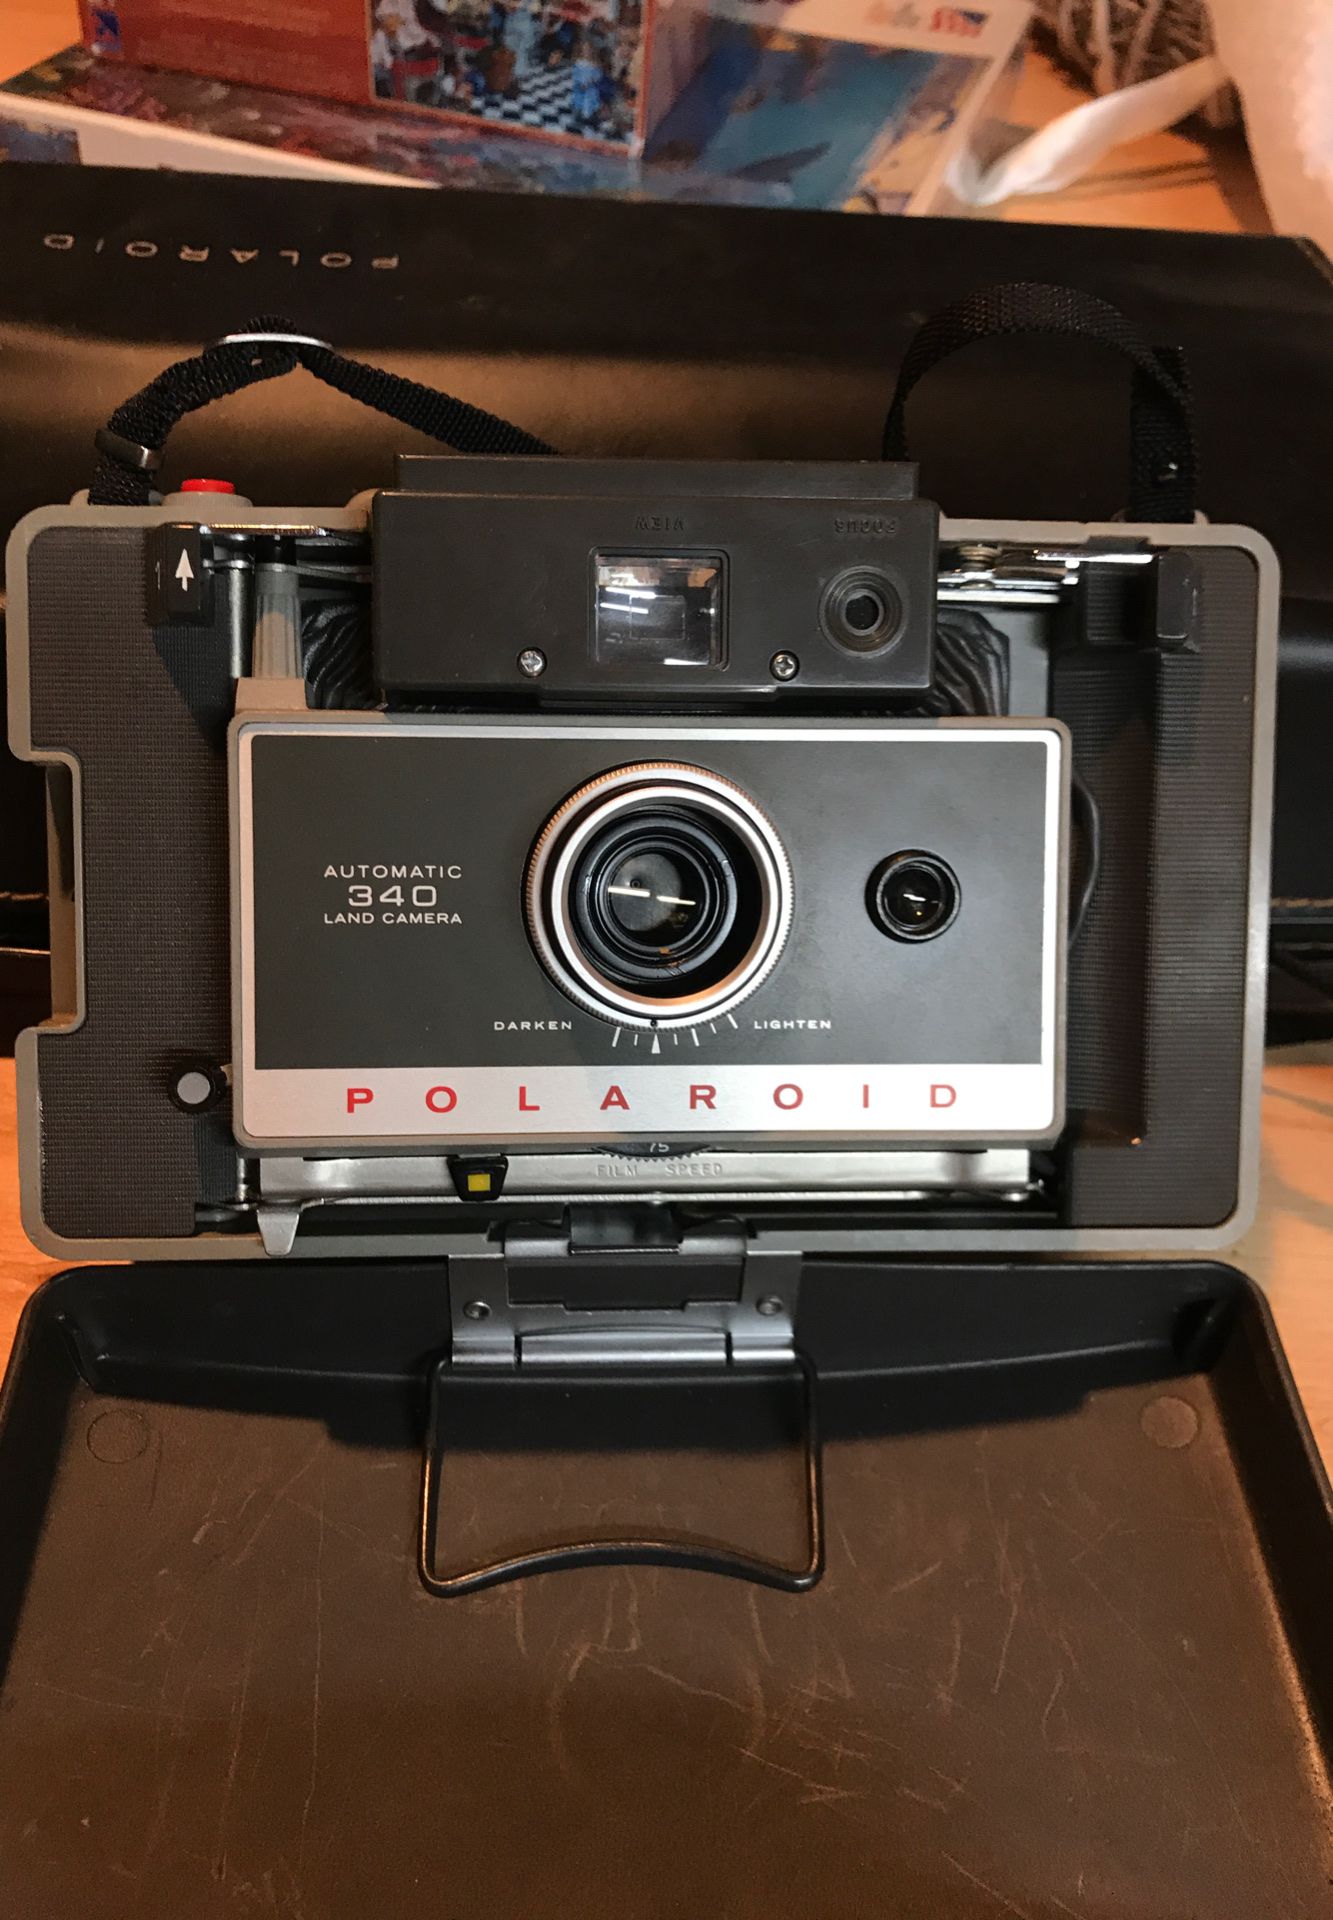 Polaroid 340 camera